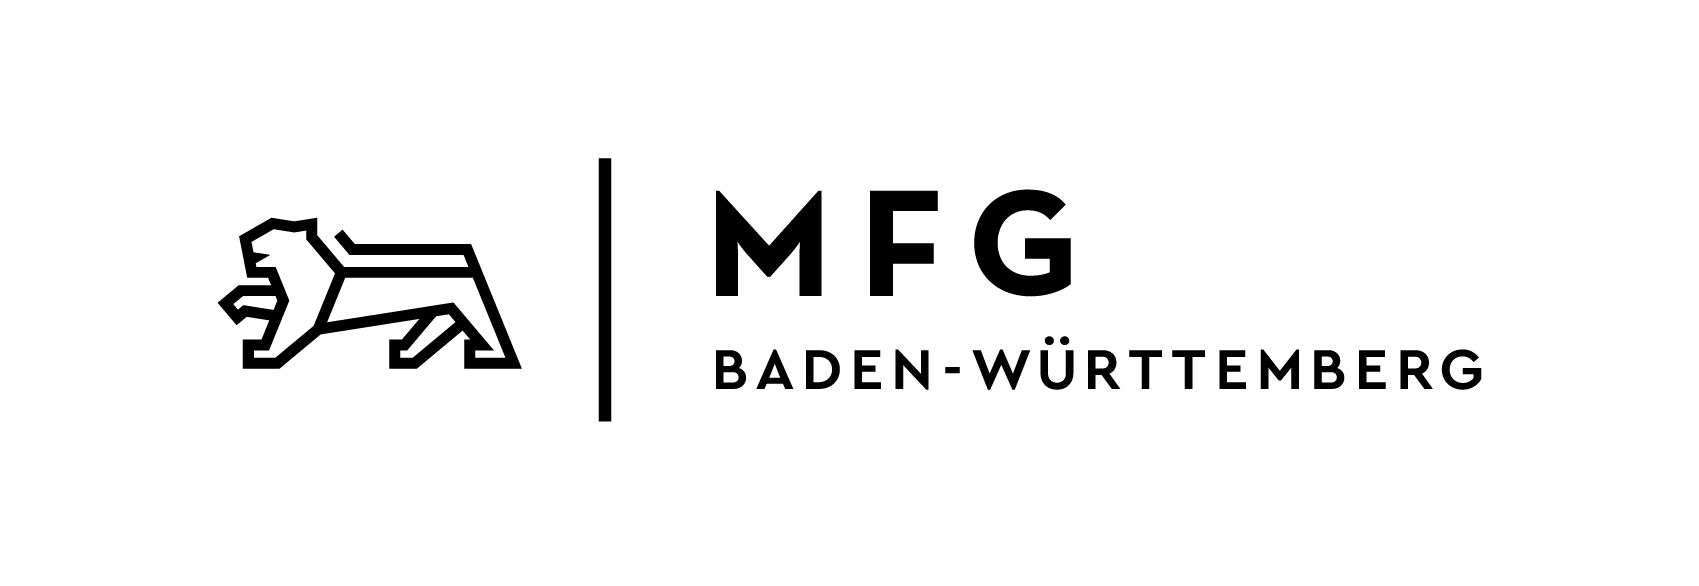 Mfg Logo - Logos | MFG BW